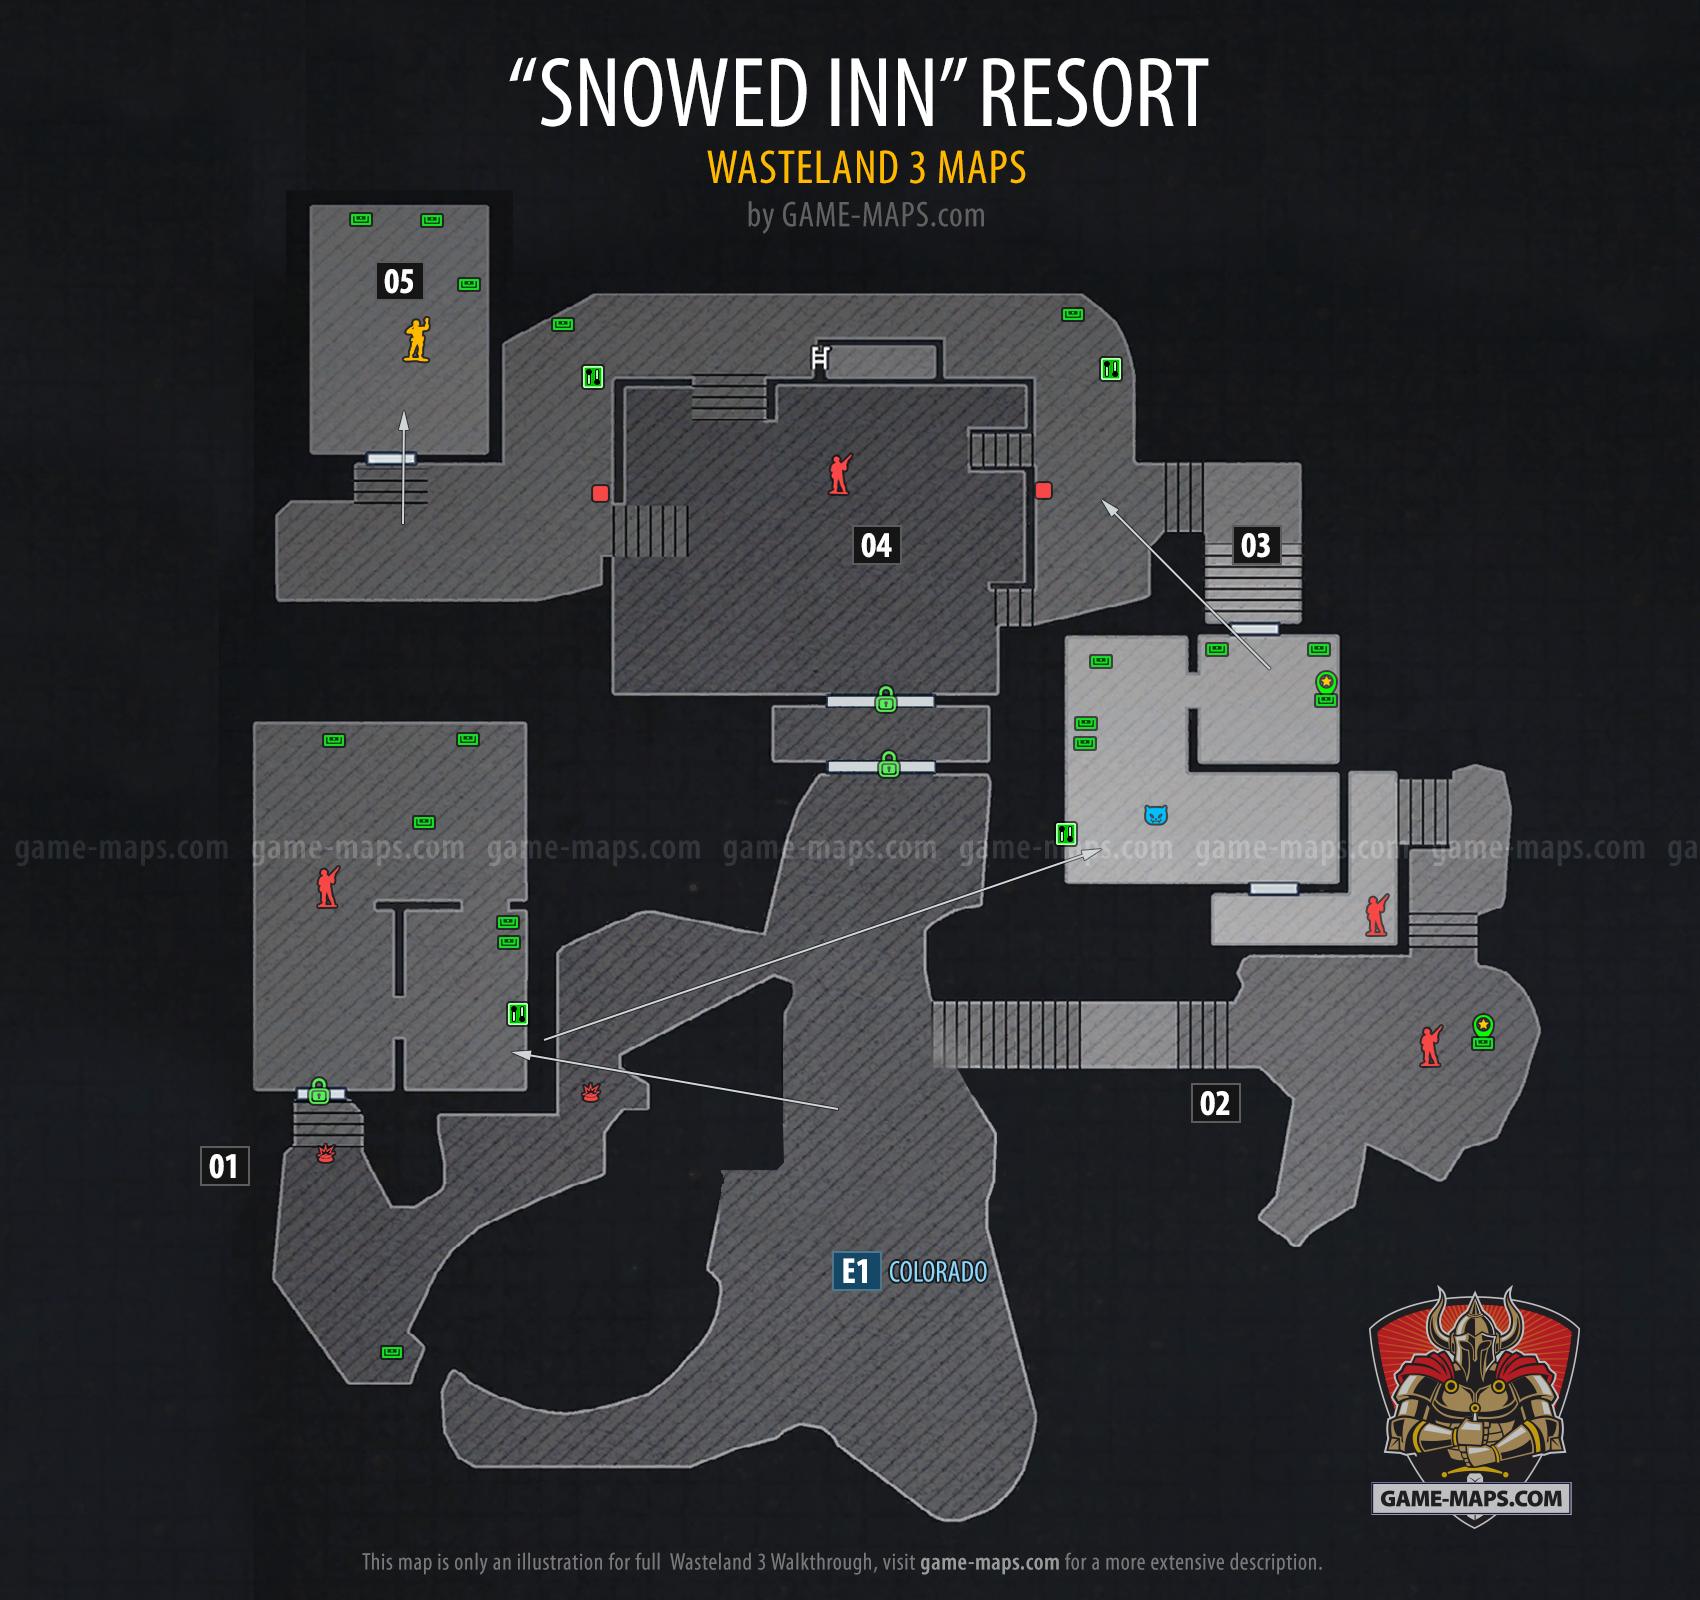 Snowed Inn Resort - Wasteland 3